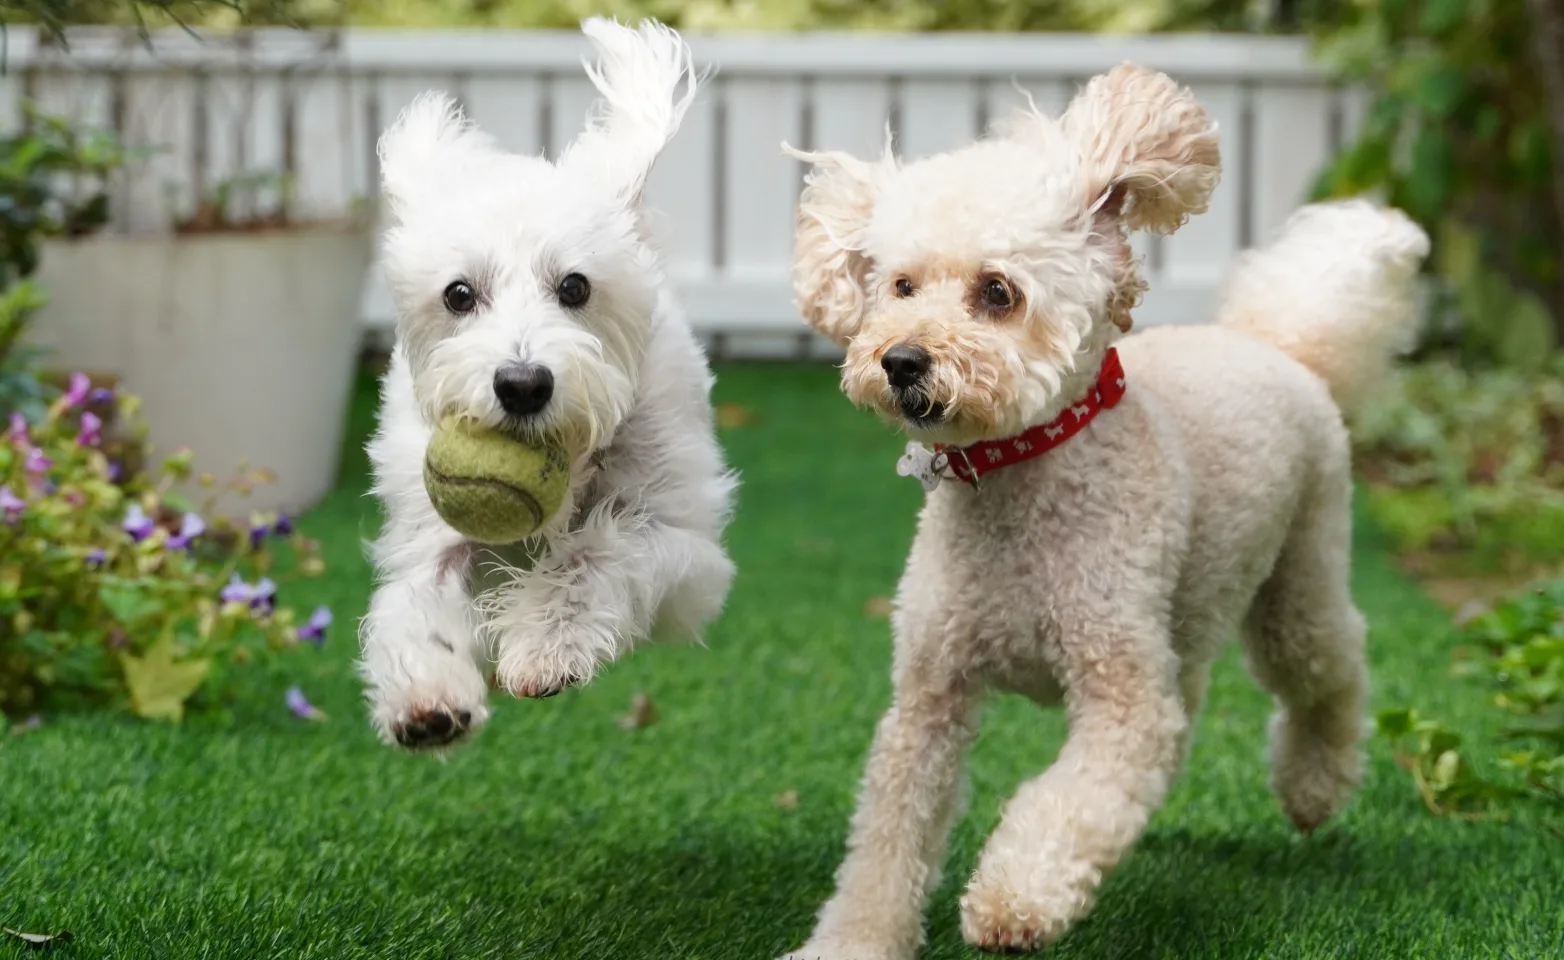 Dogs, ball game in flower garden